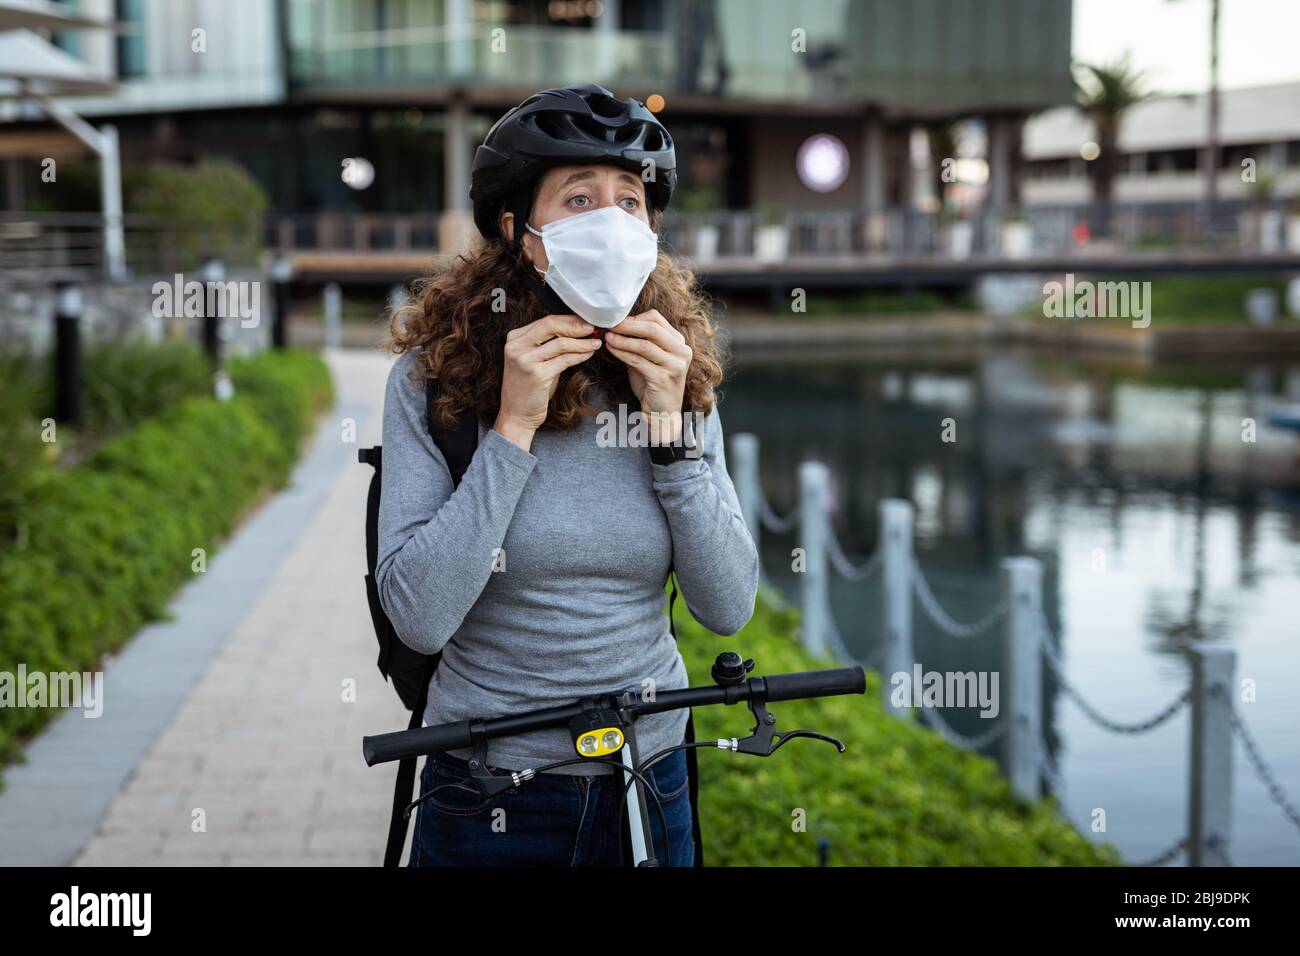 Femme caucasienne mettant un masque de protection et portant un casque de cyclisme dans la rue Banque D'Images